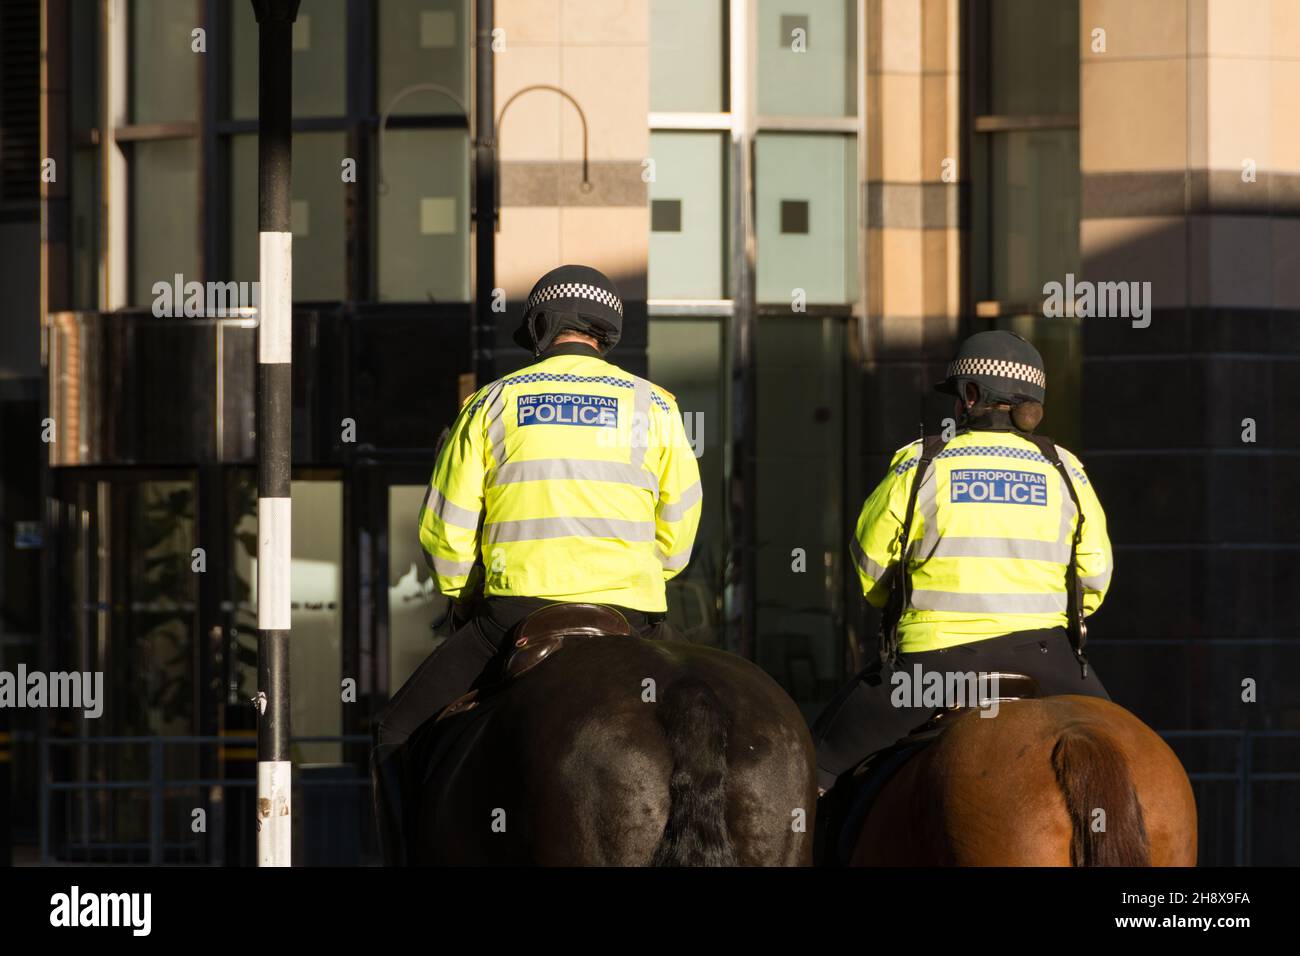 Deux policiers à cheval à Hammersmith, ouest de Londres, Angleterre, Royaume-Uni Banque D'Images